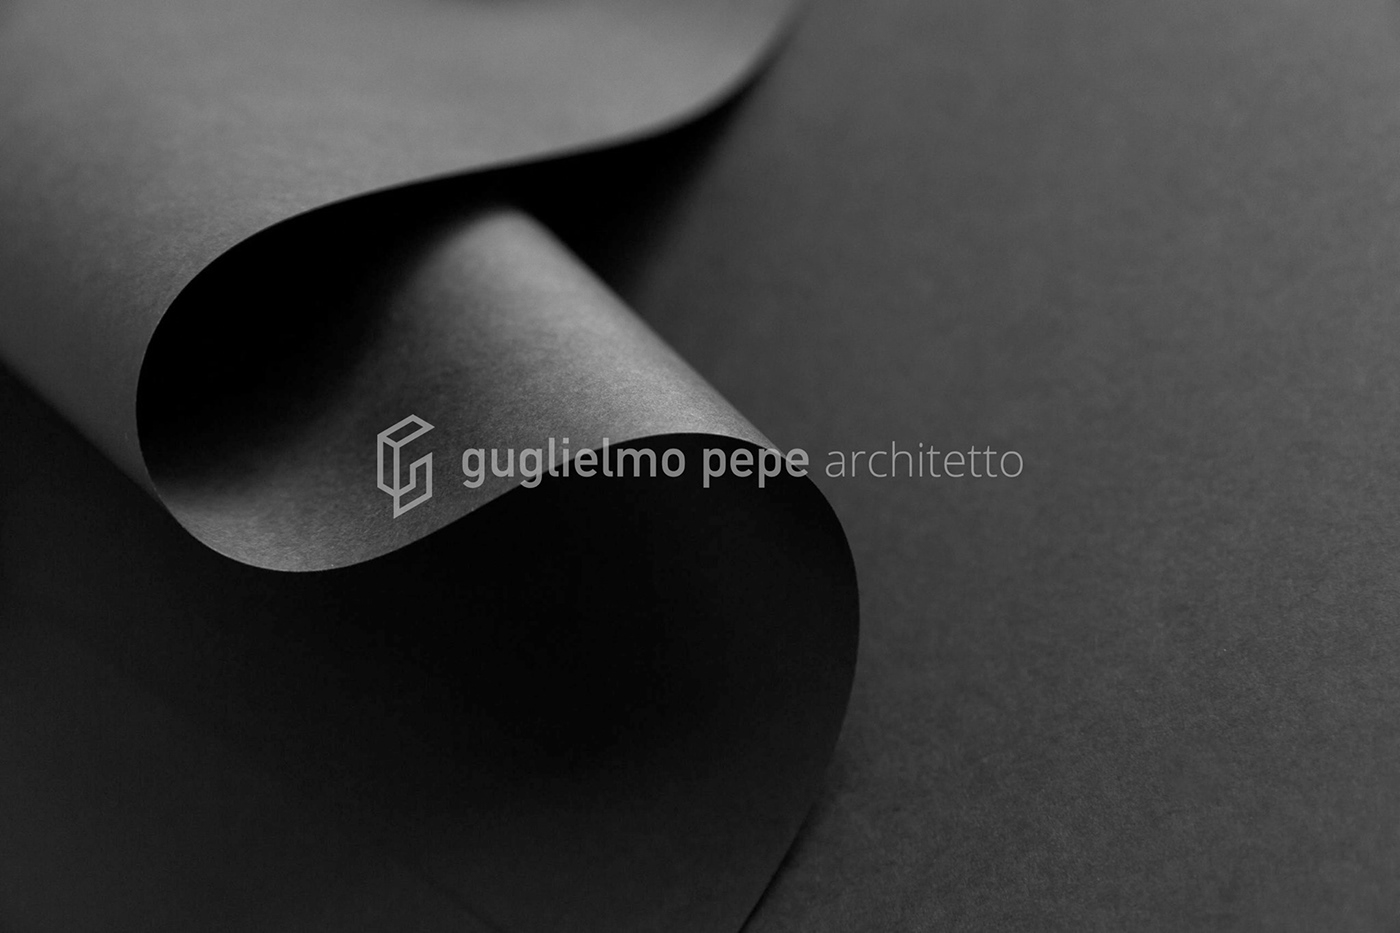 Guglielmo Pepe建筑事务所品牌设计